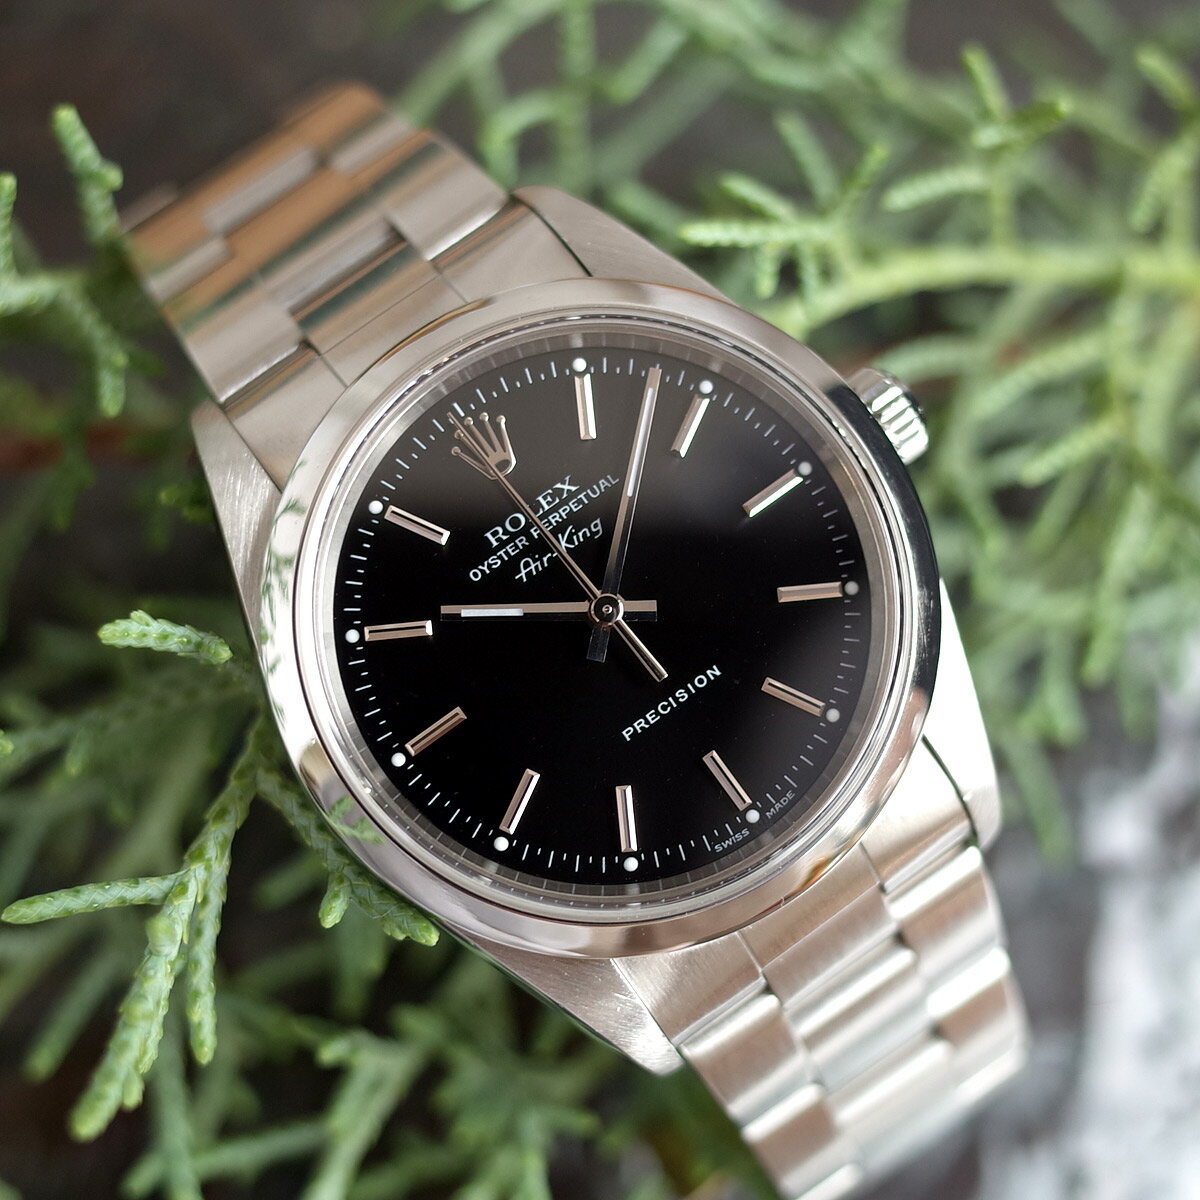 ロレックス エアキング 14000Mの価格一覧 - 腕時計投資.com